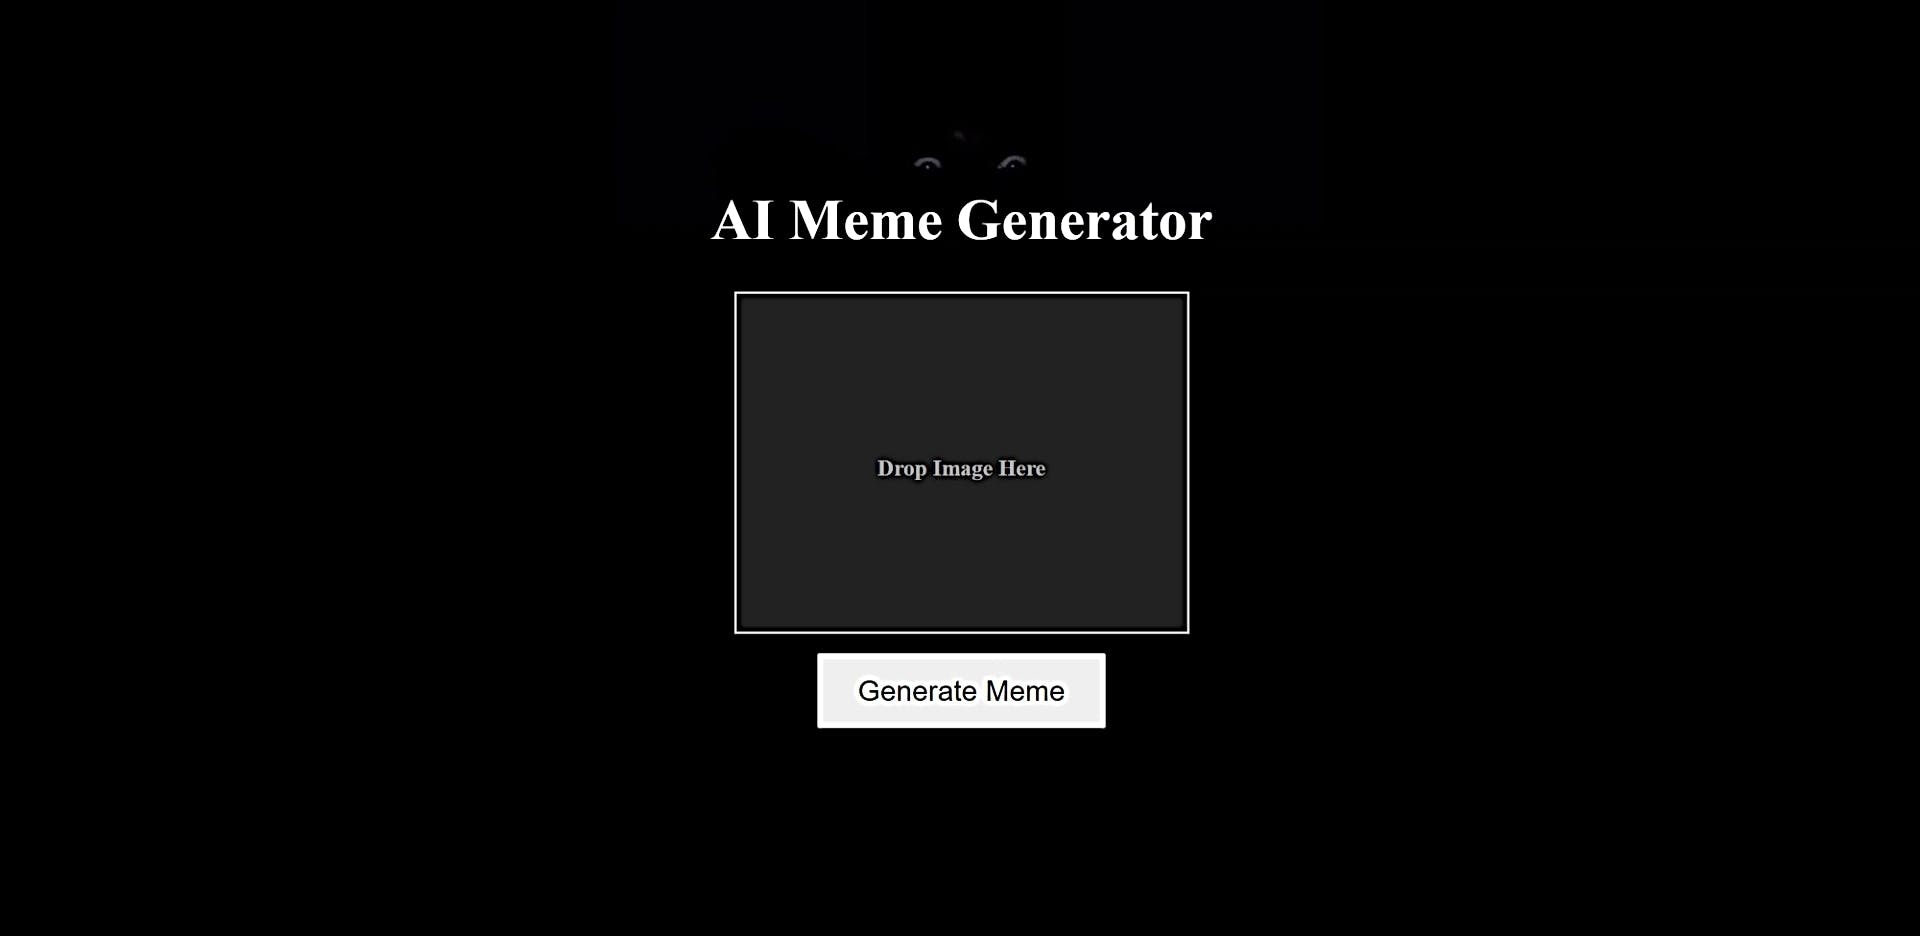 AI Meme featured